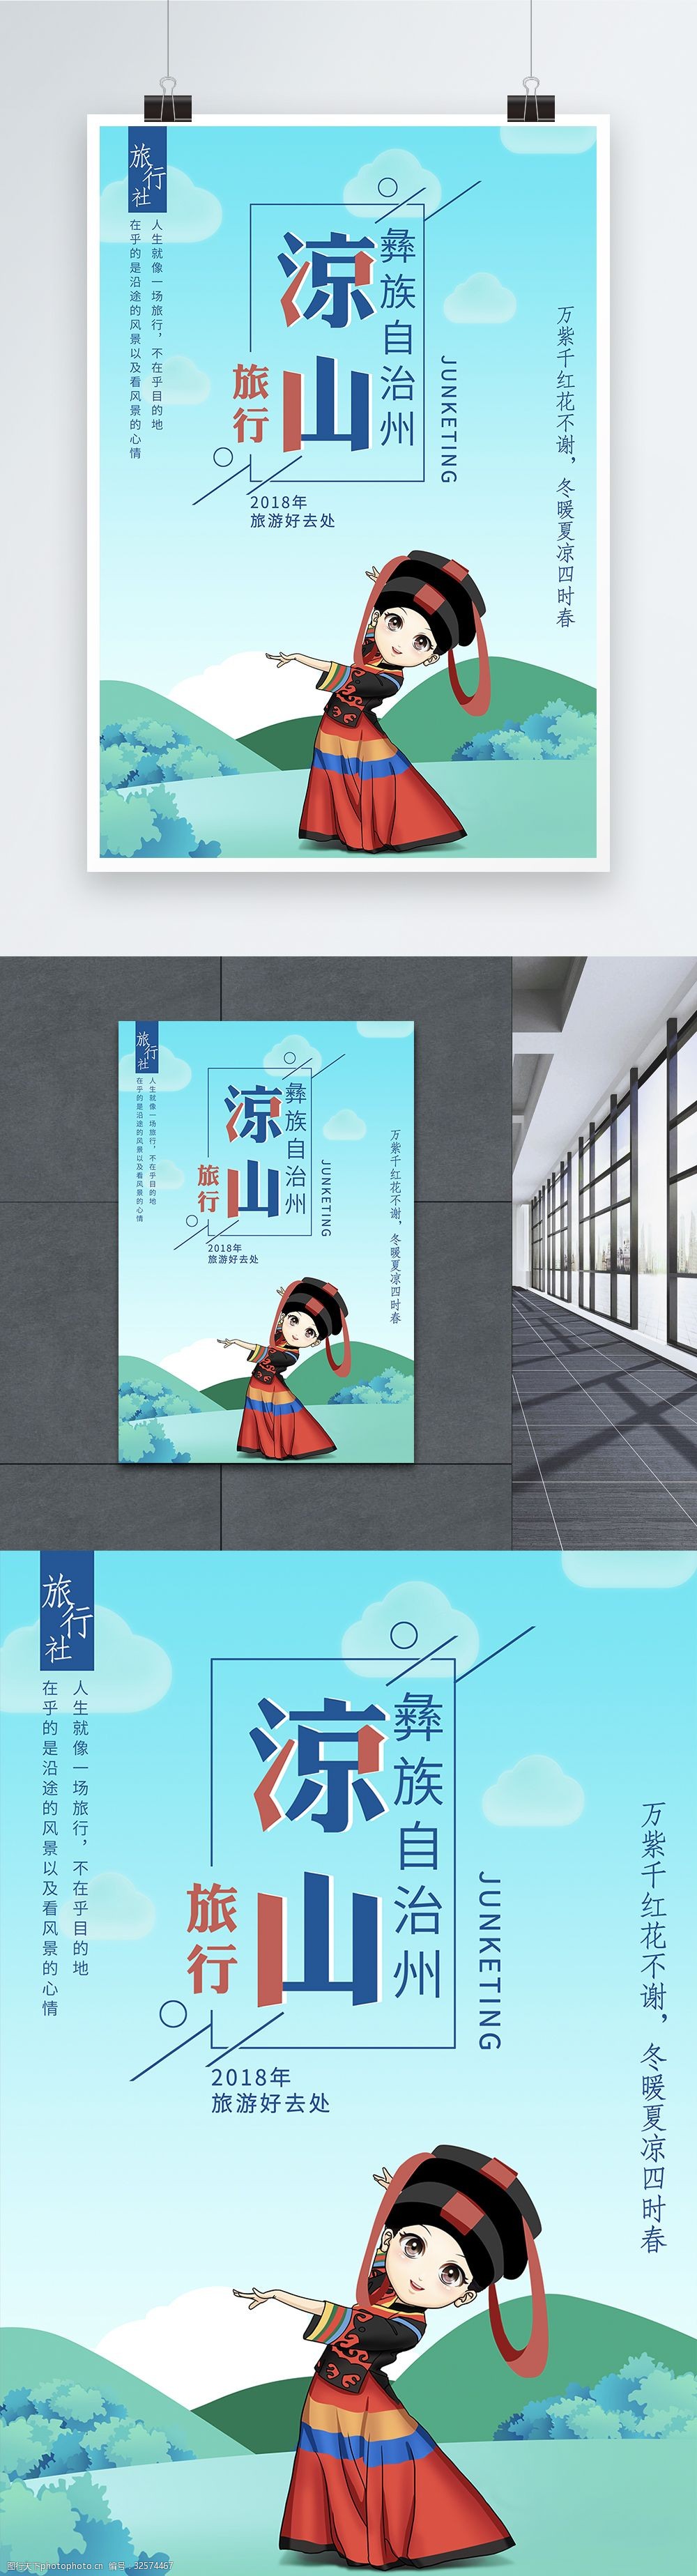 凉山彝族旅游宣传海报